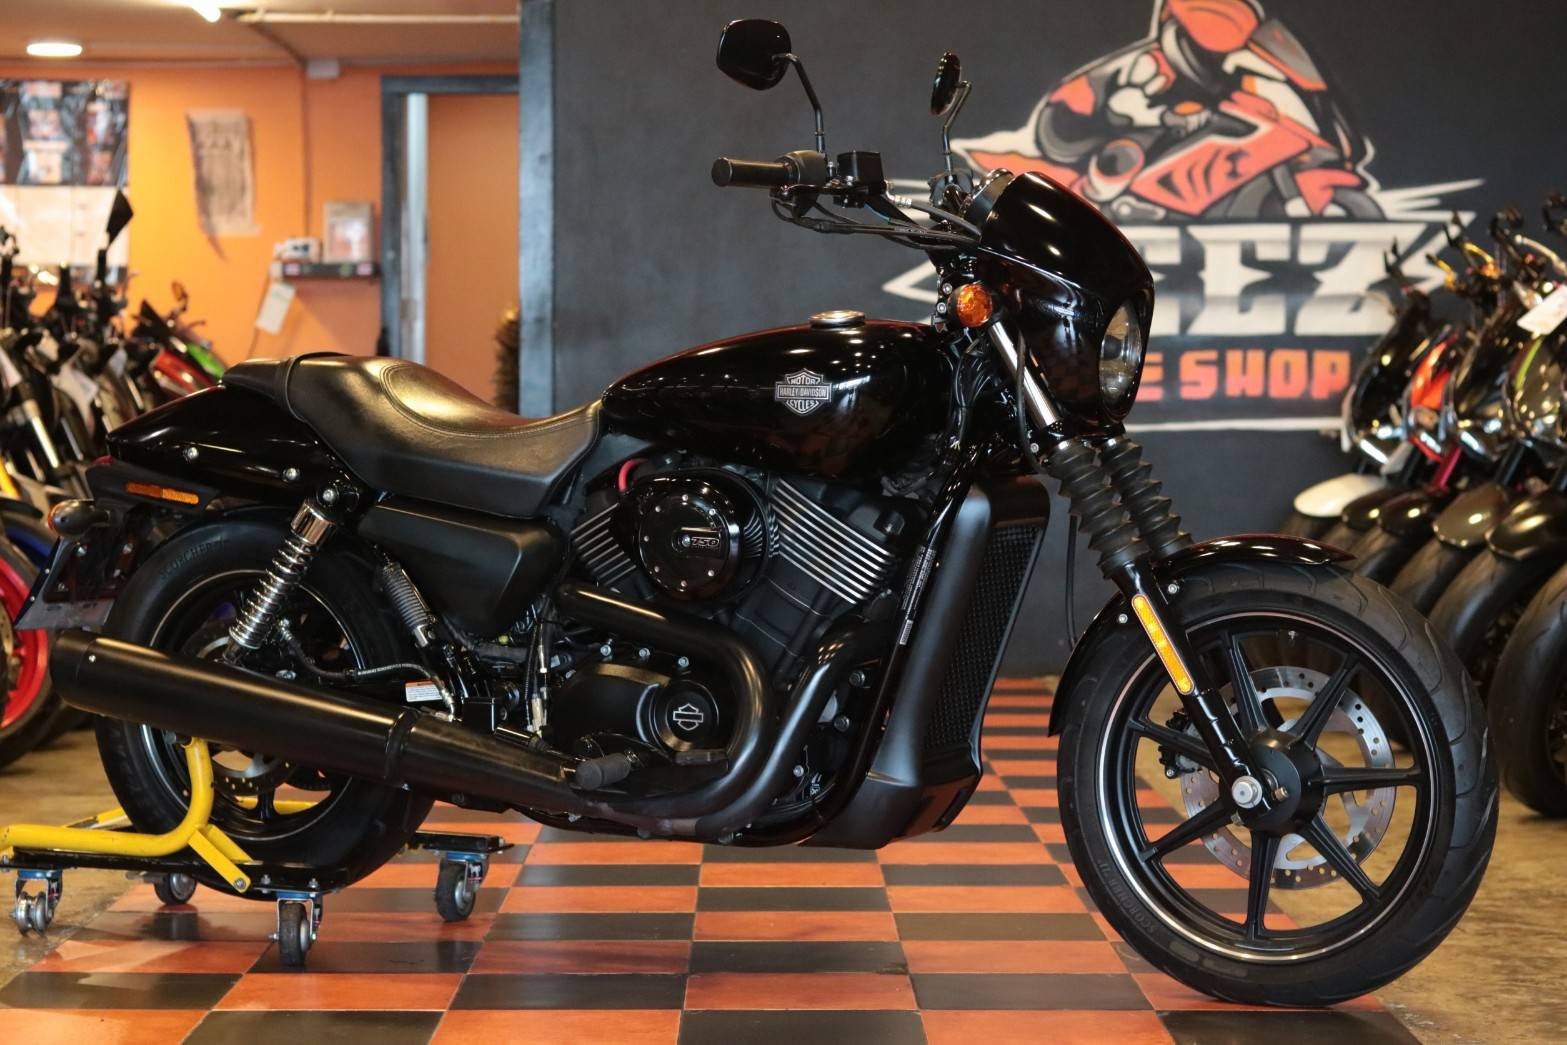 ขาย Harley-Davidson Street 750 ปี 2015 สภาพป้ายแดง6000โล